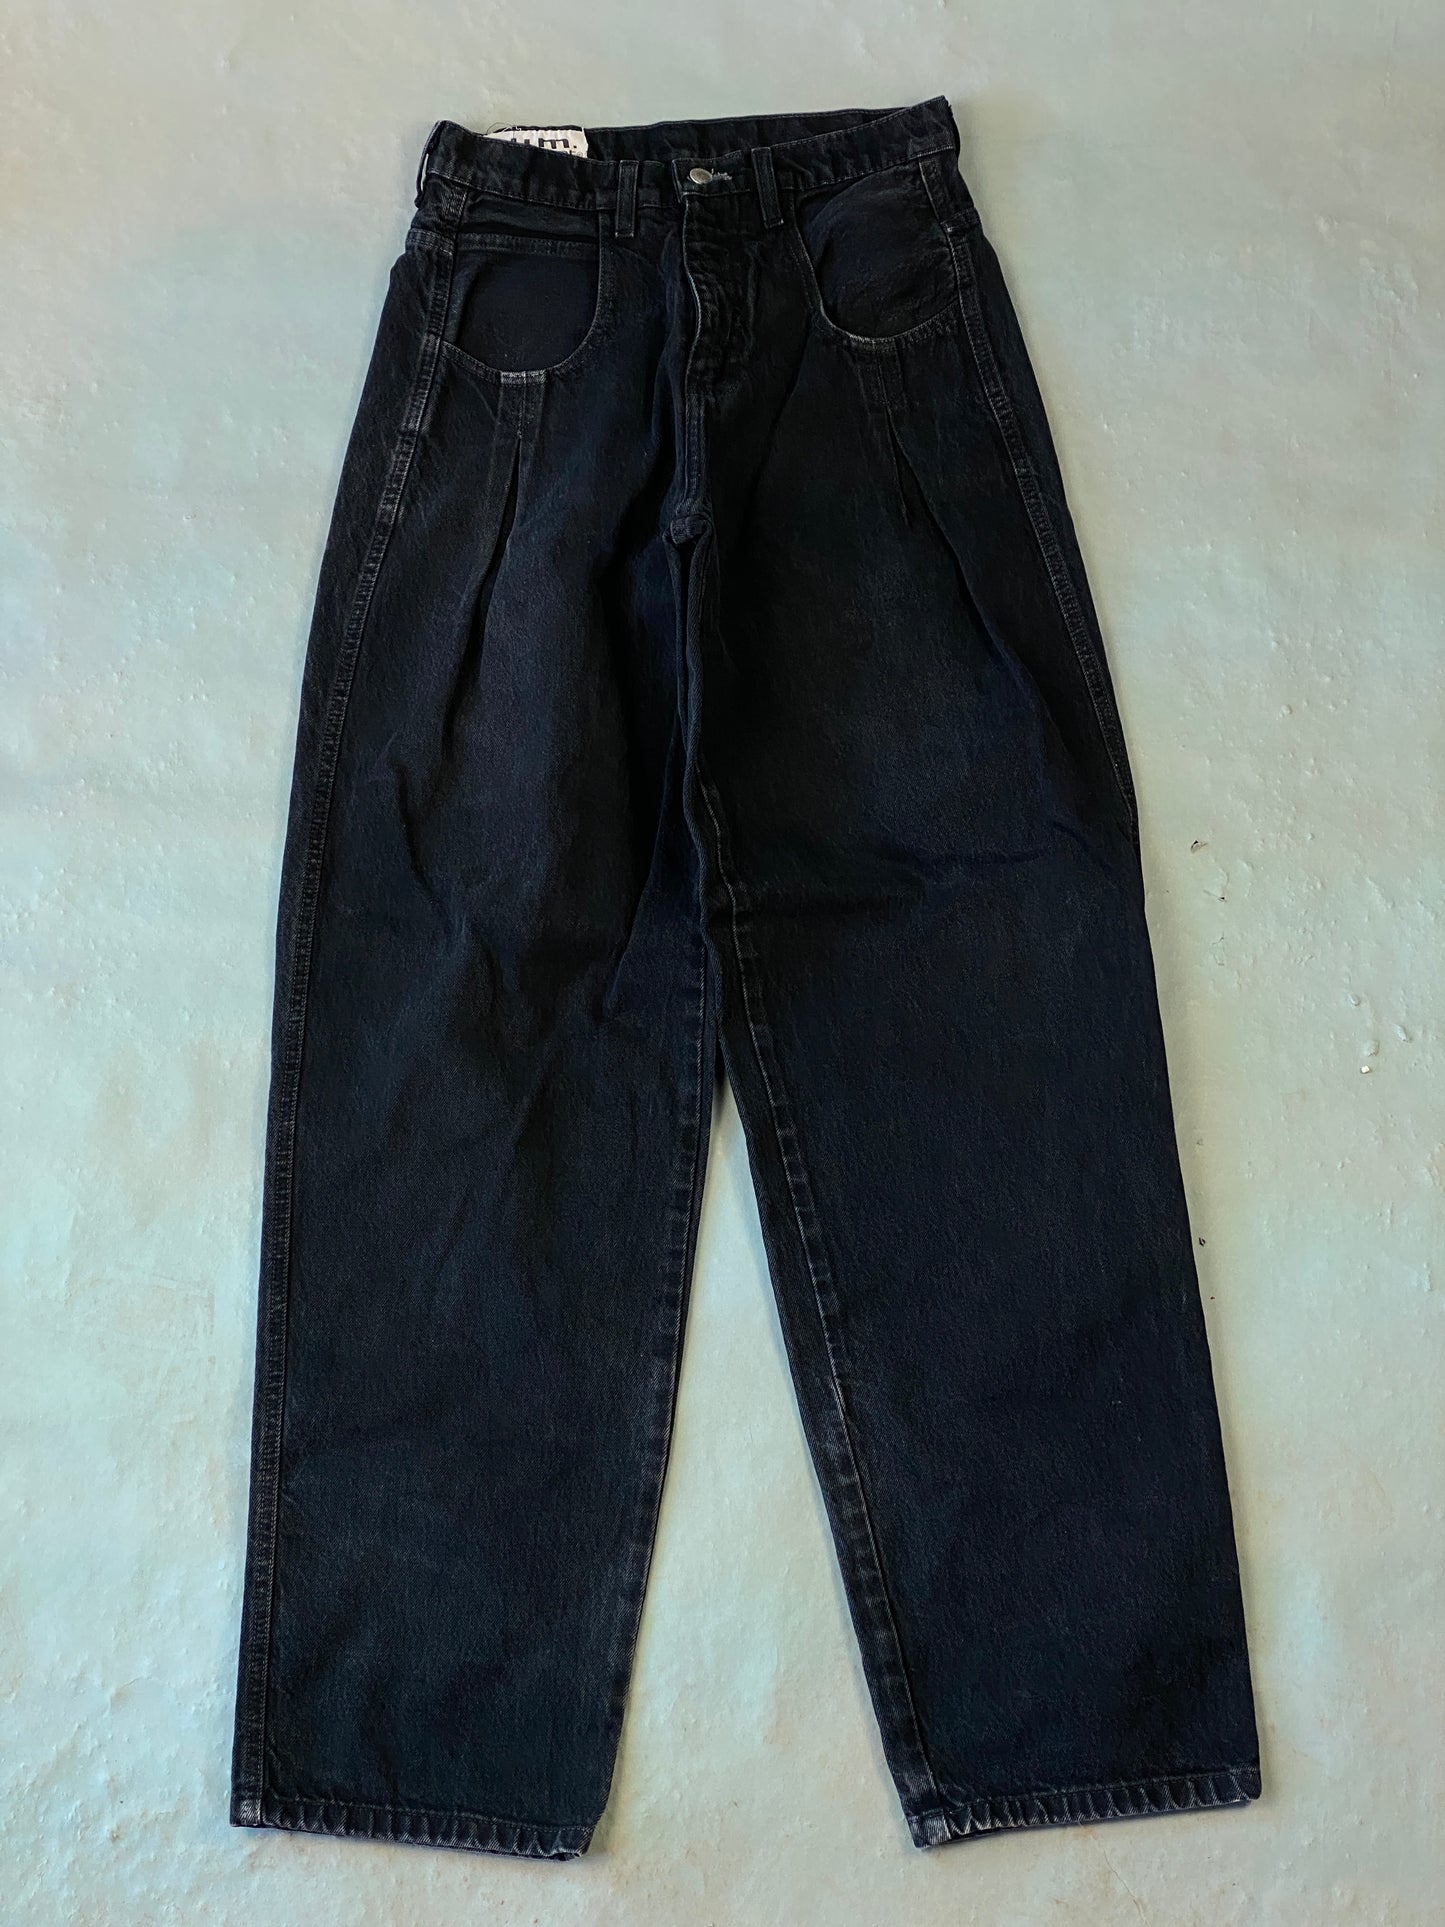 BUM Equiment Vintage Jeans - 30